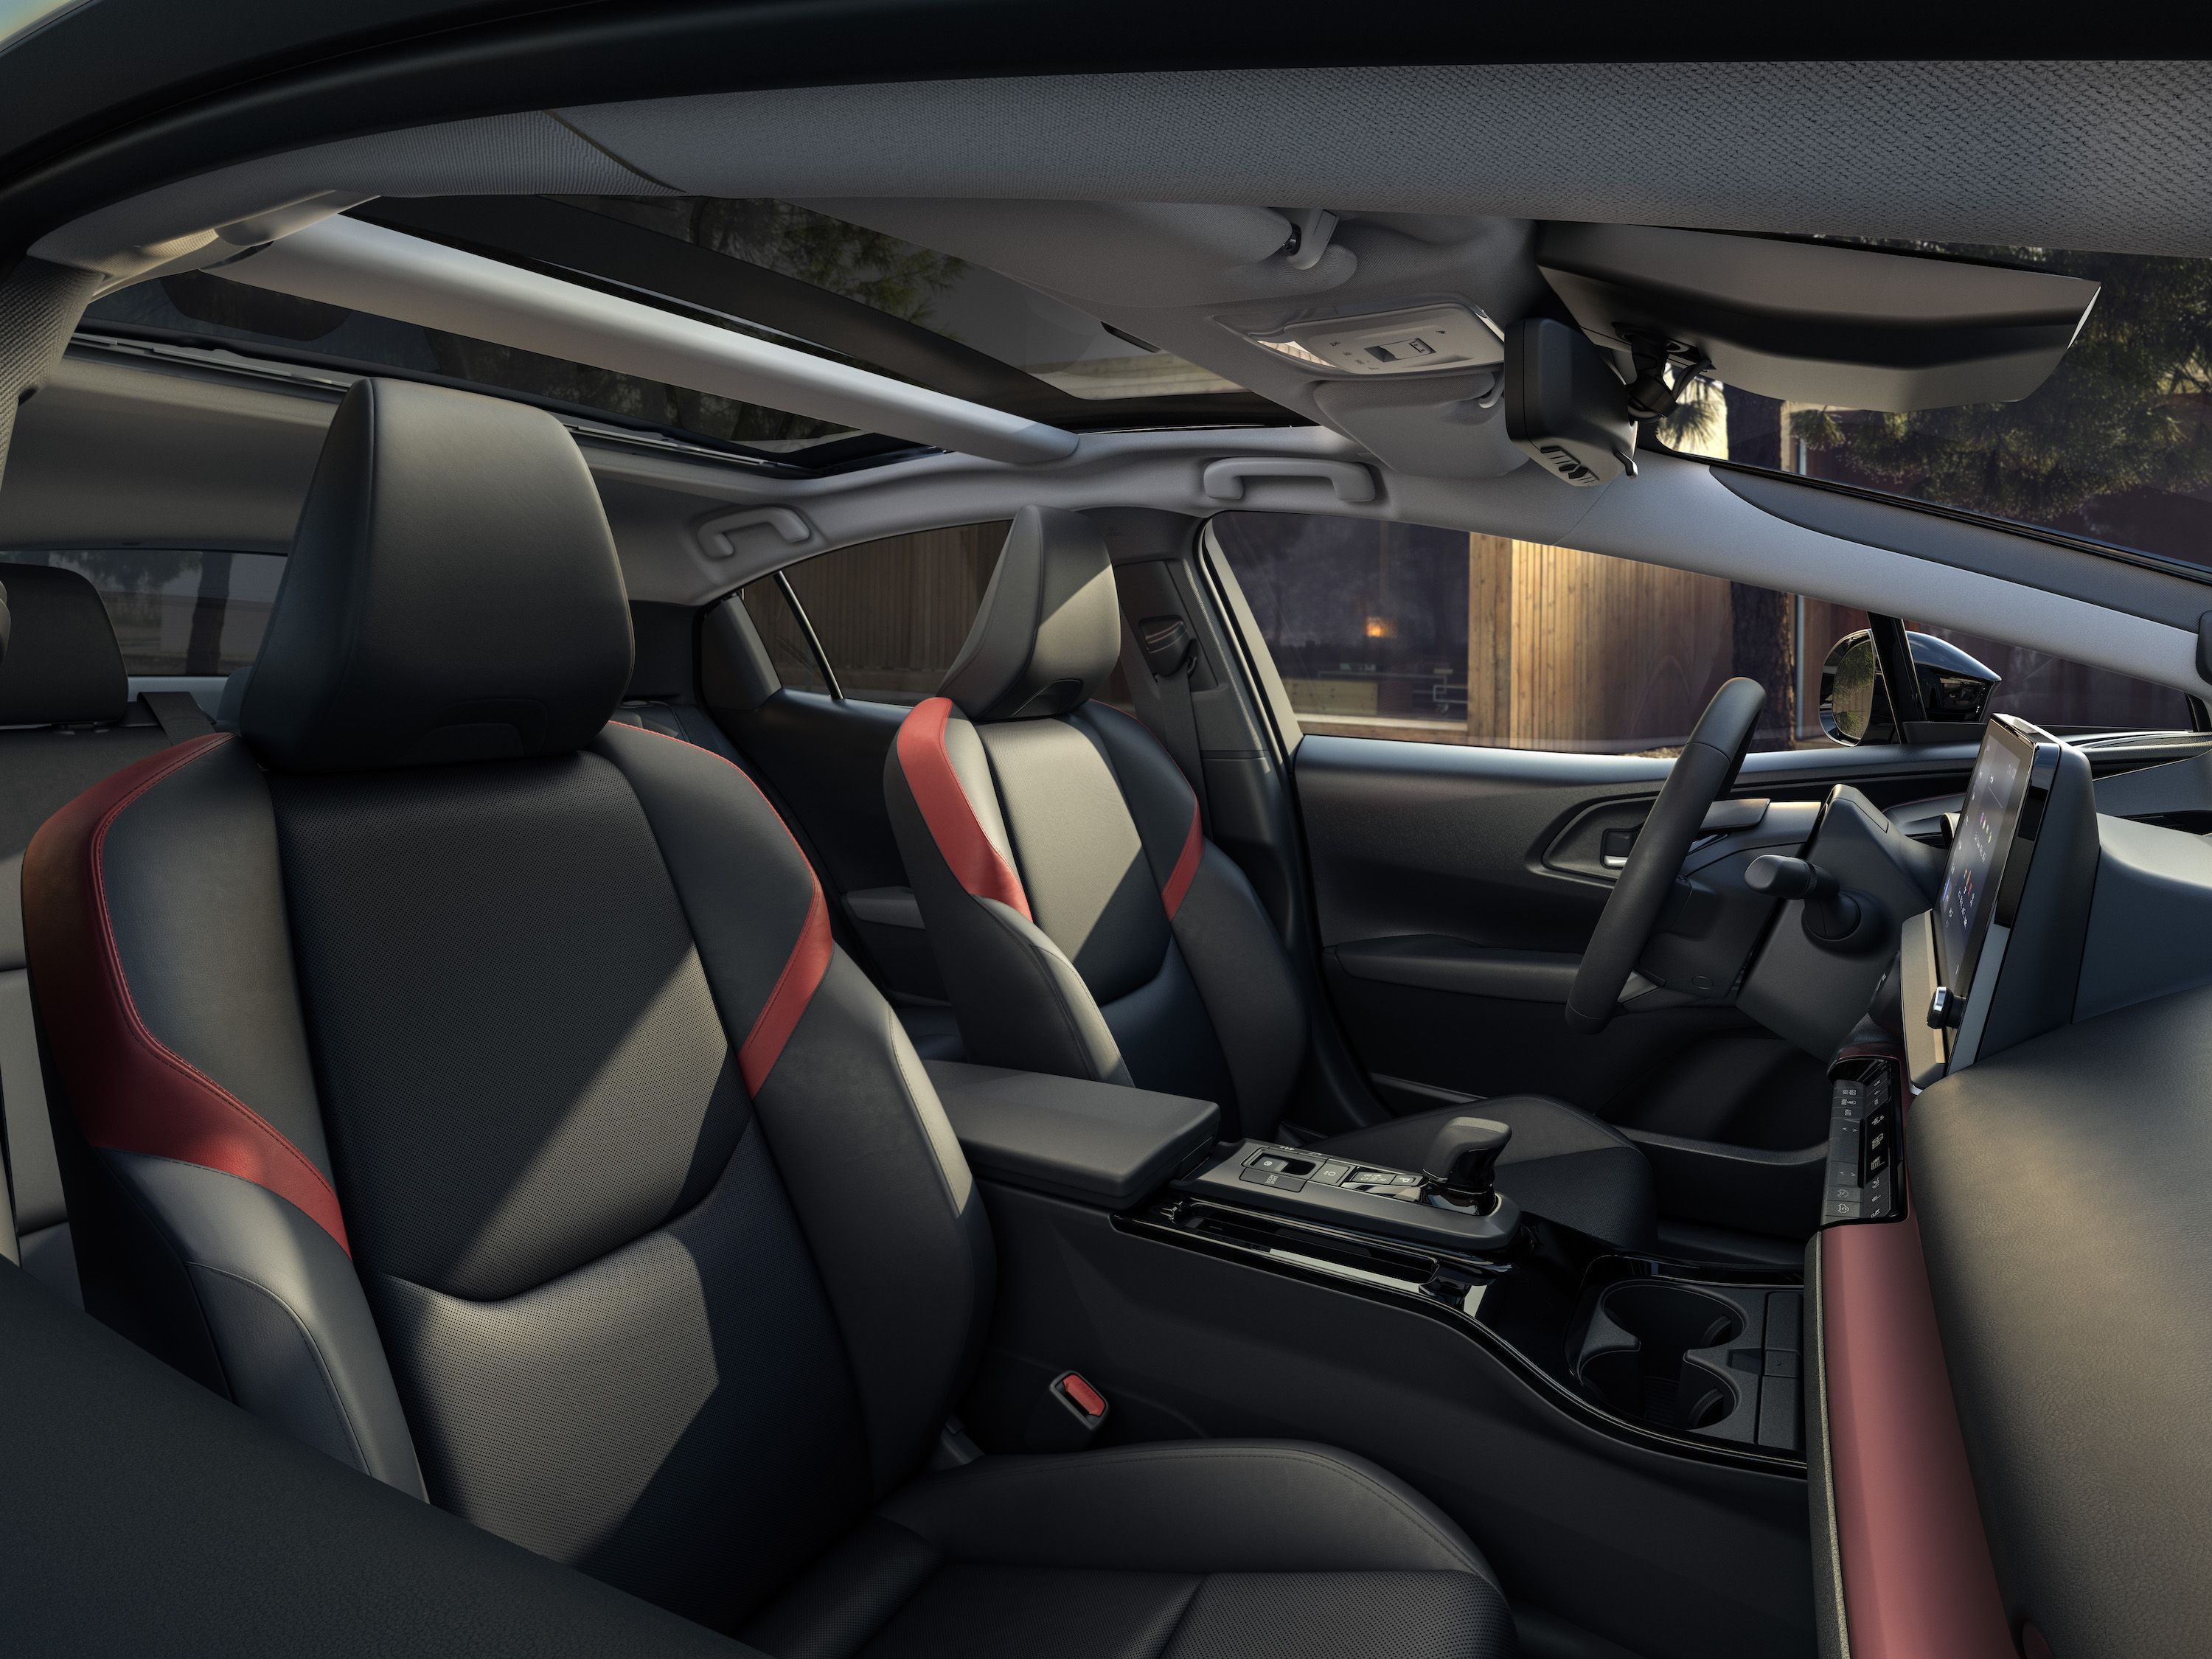 Toyota Prius interior - Seats